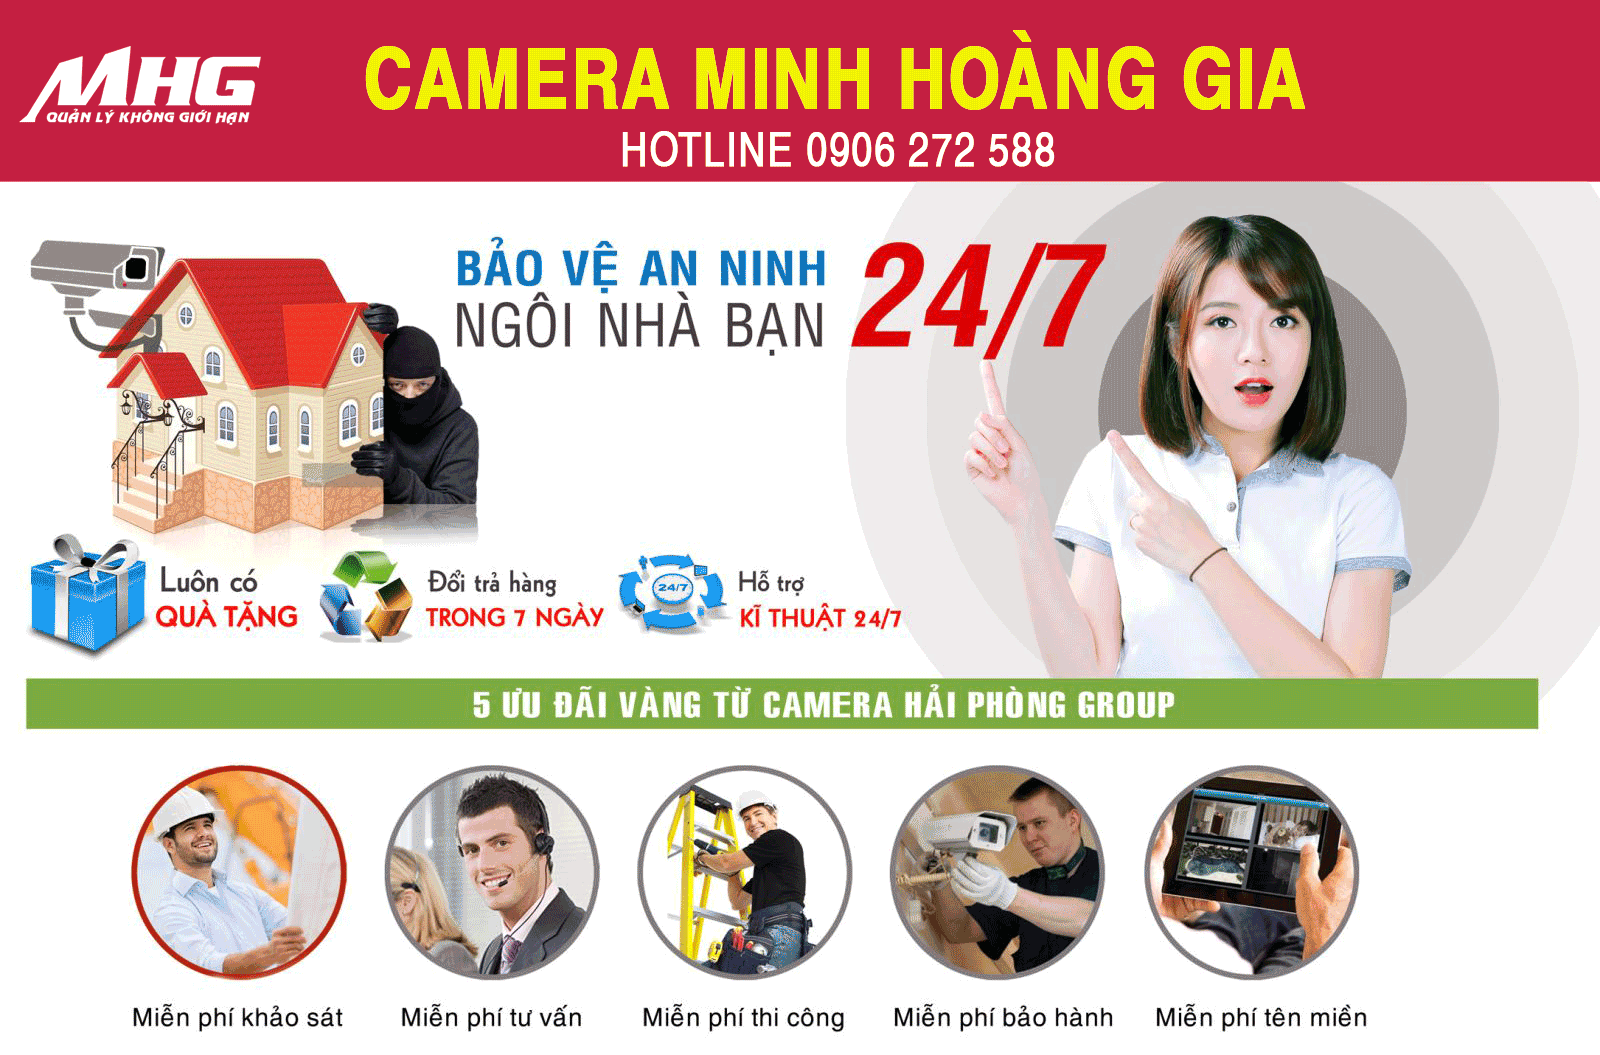 CameraMHG đảm bảo an ninh nhà bạn 24/7